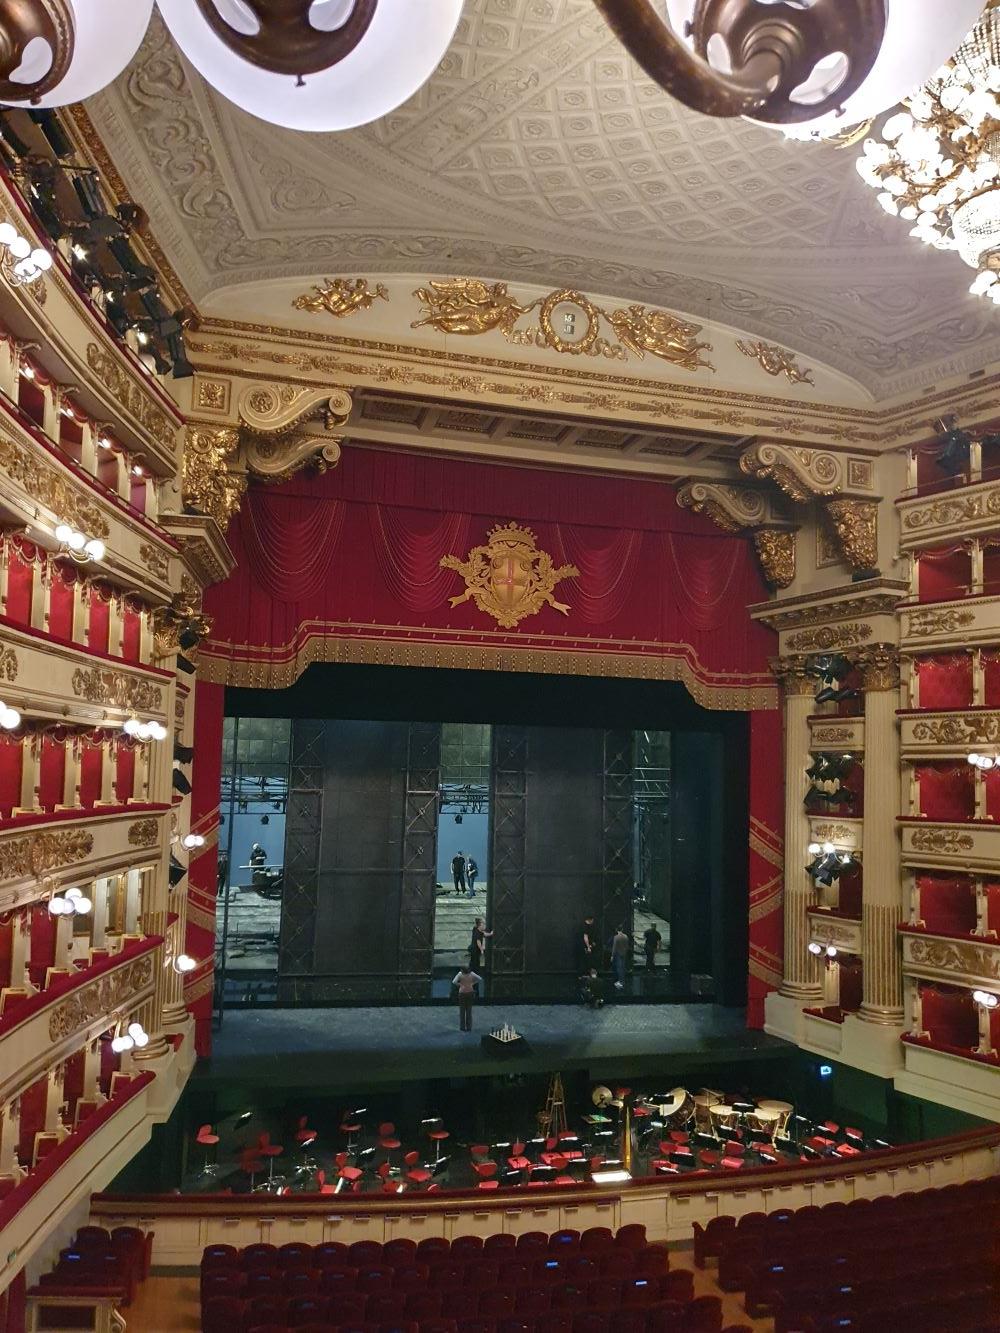 A világ talán leghíresebb operája, a Teatro alla Scala